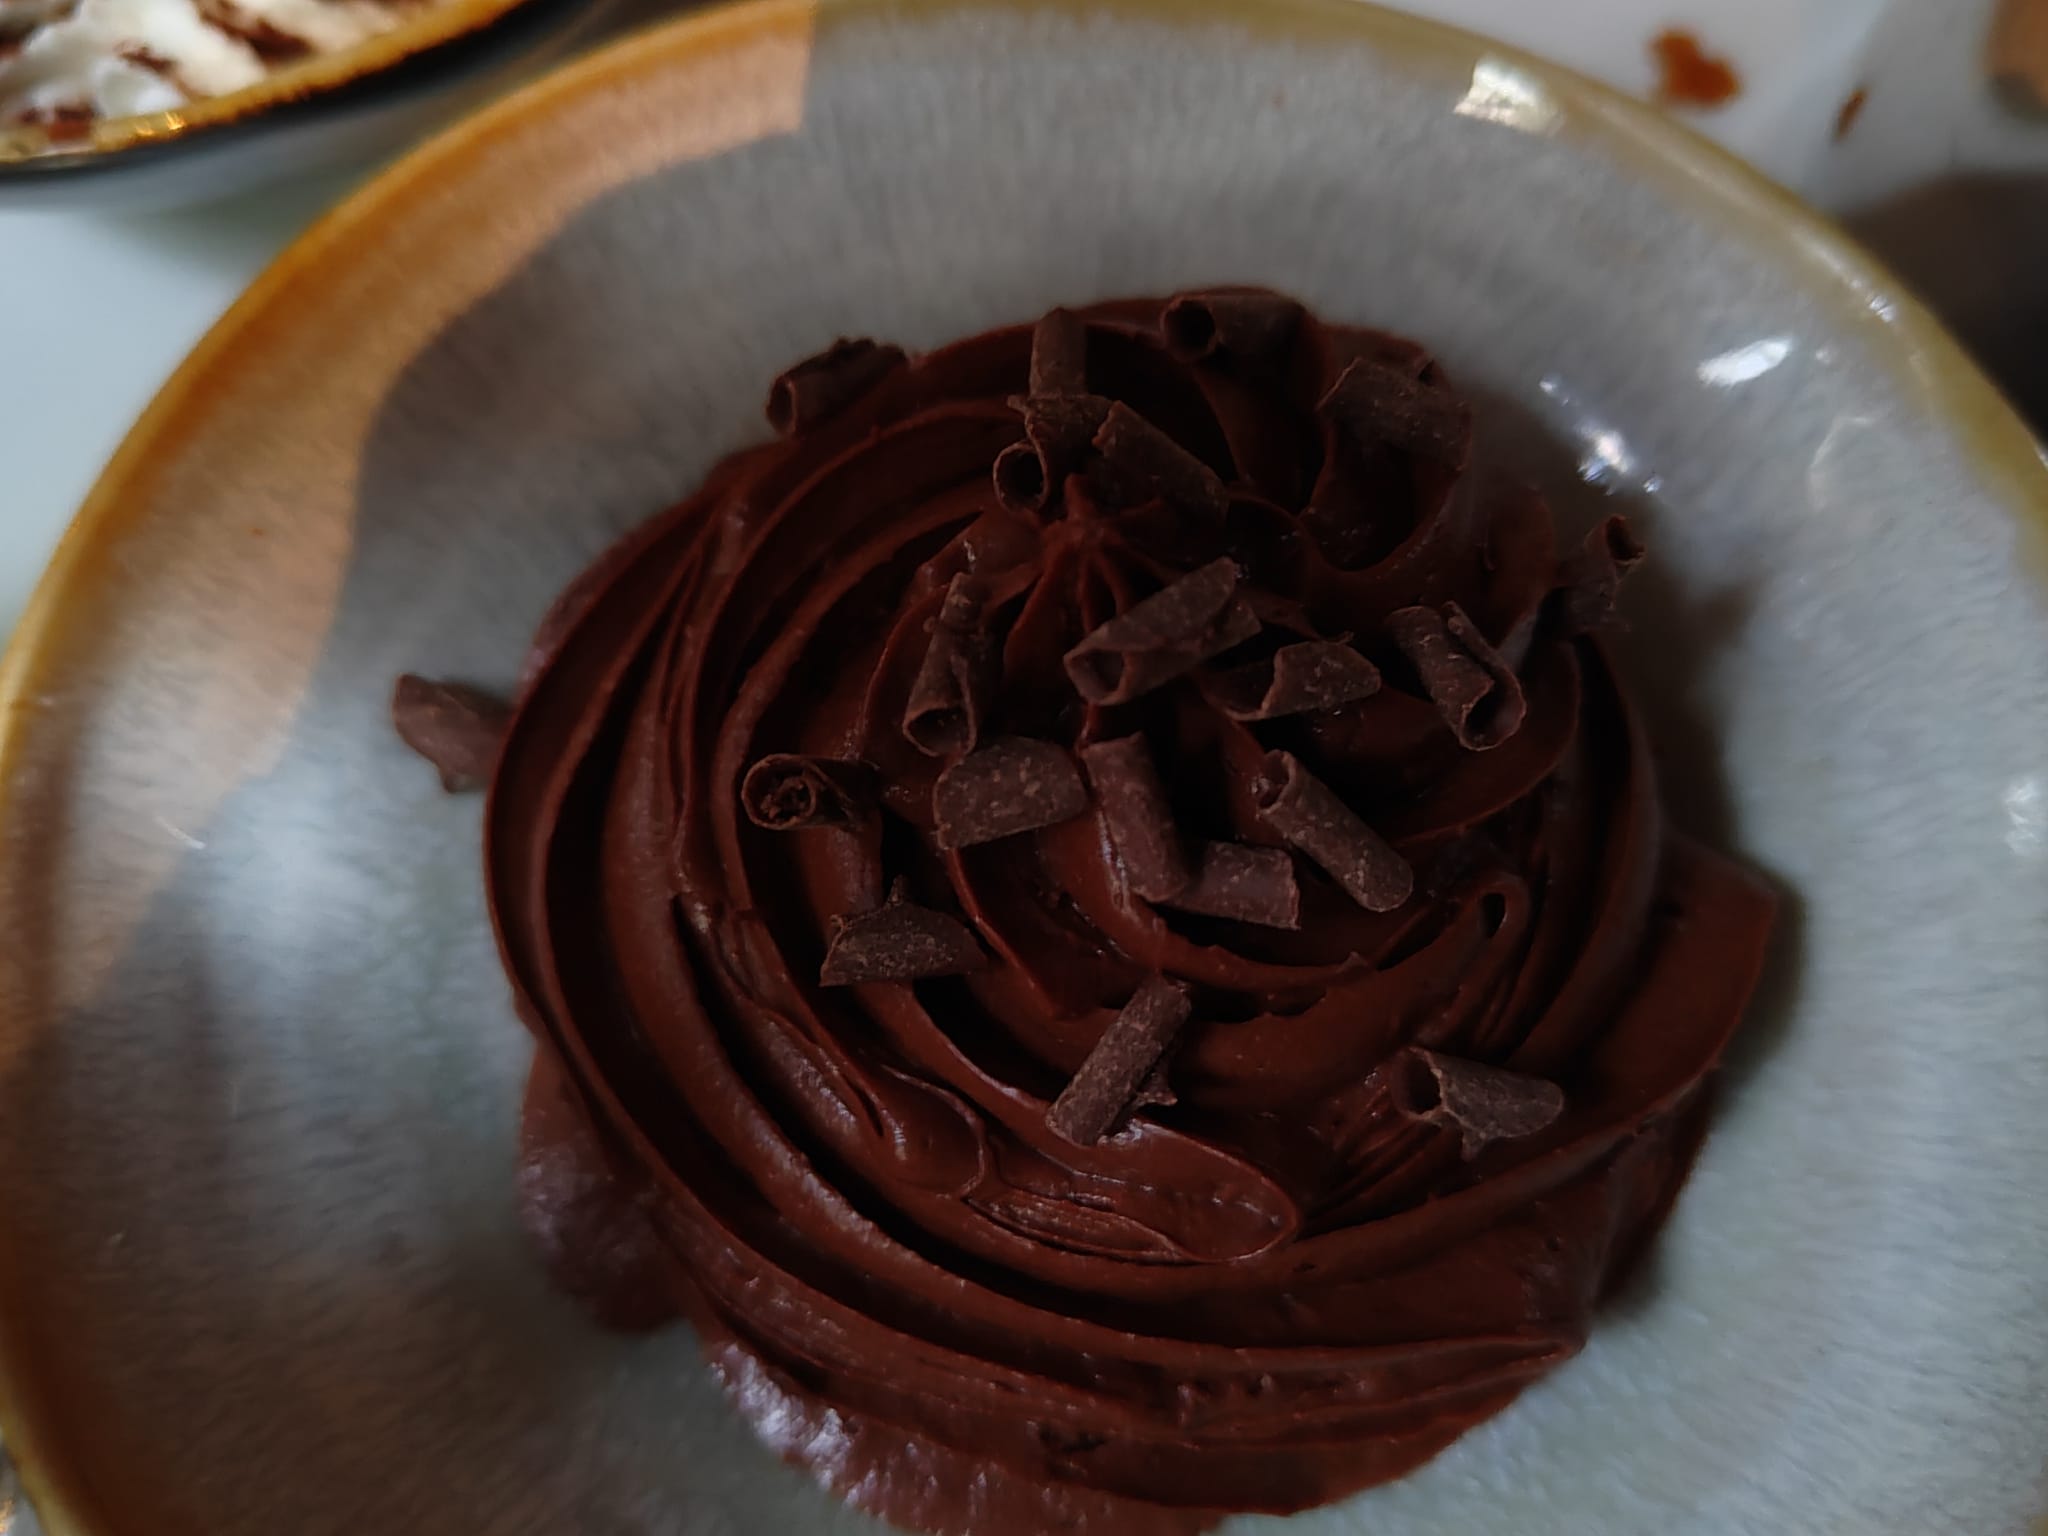 Mousse au chocolat du brunch - Le Comptoir général